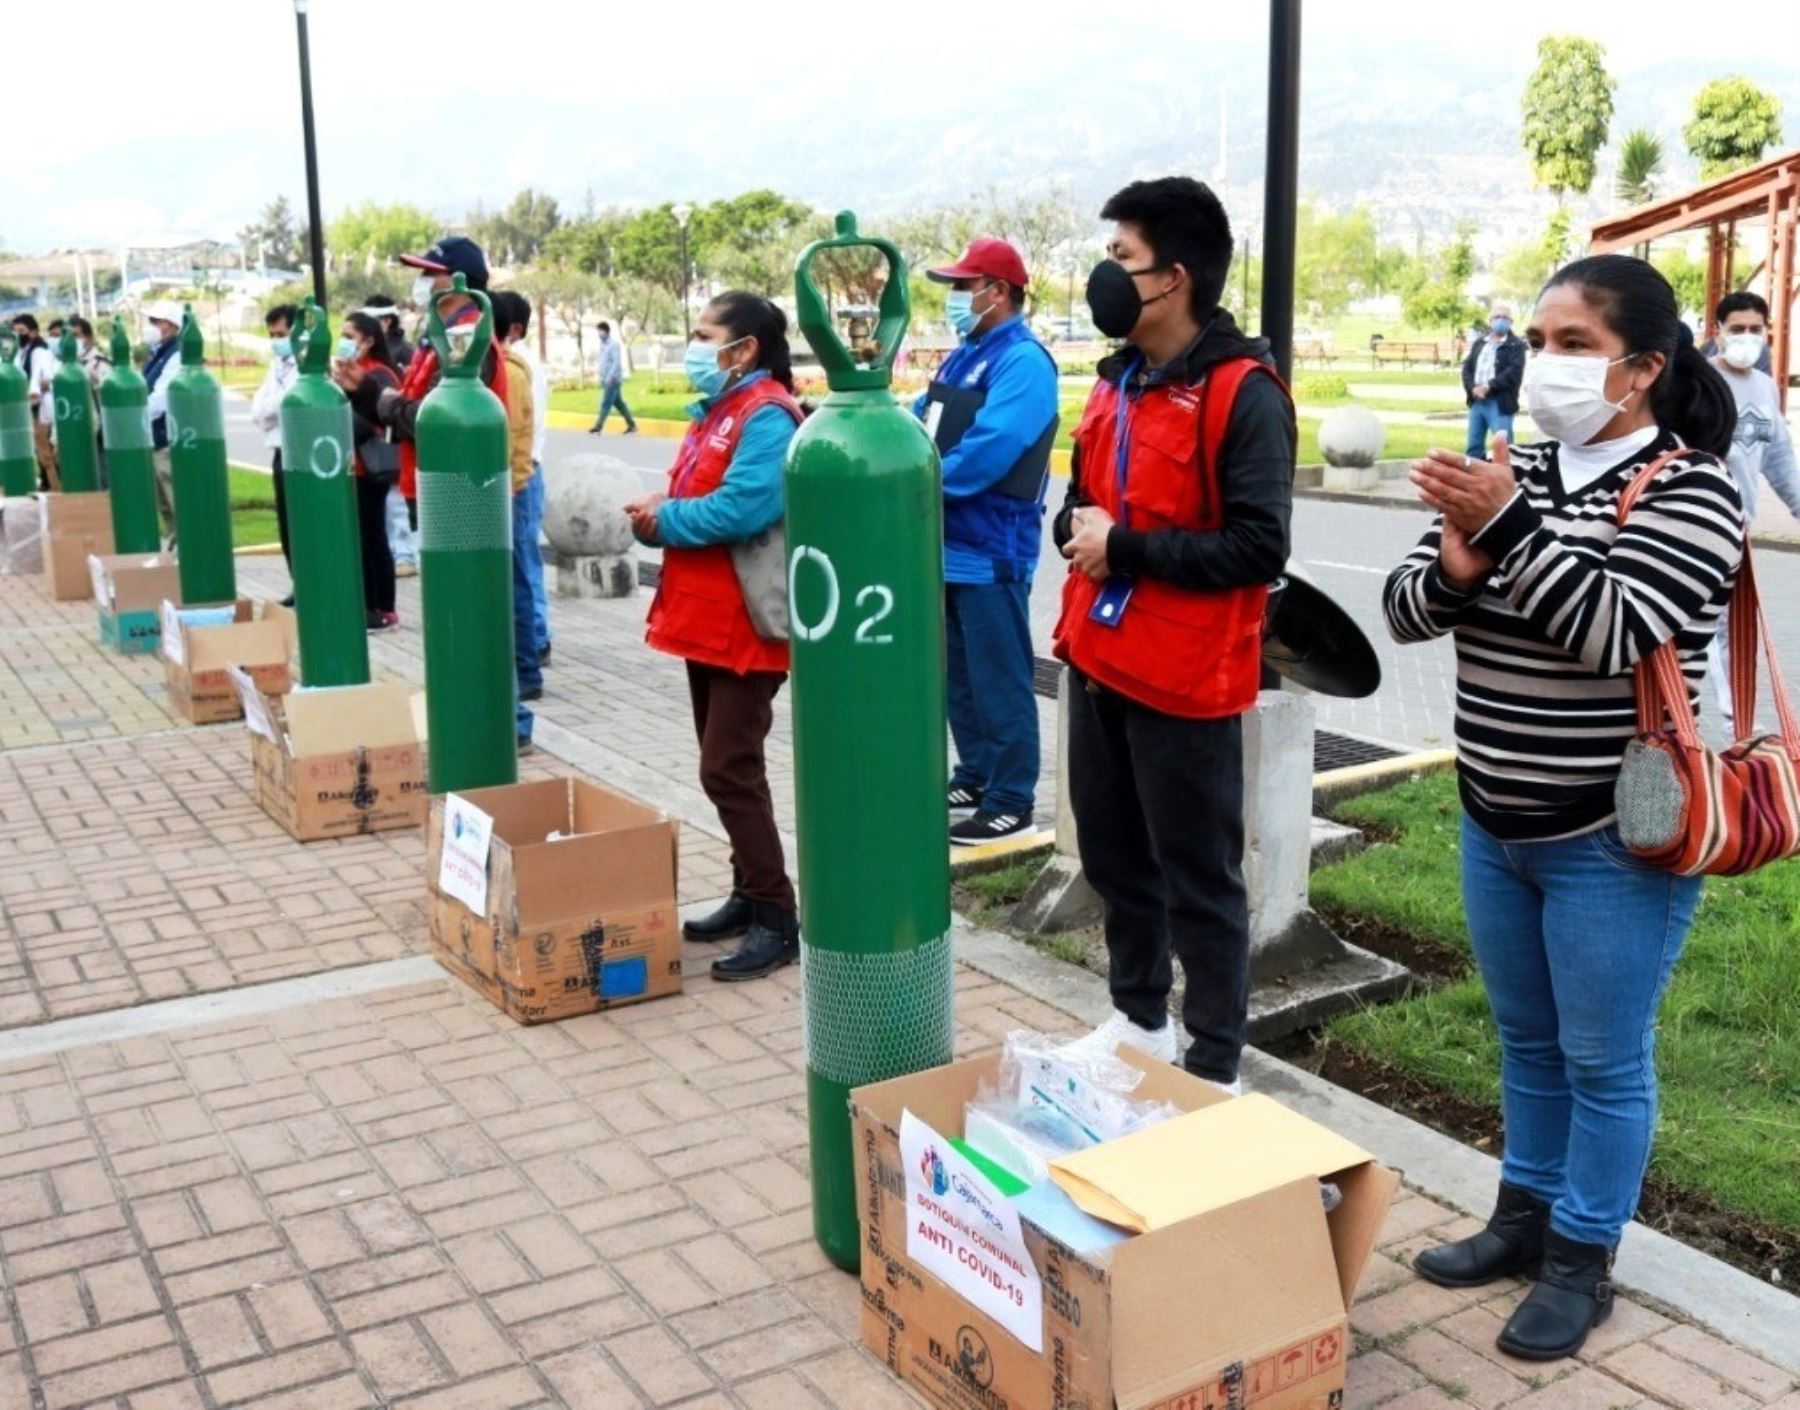 Municipalidad de Cajamarca anuncia que comprará planta de oxígeno para atender creciente demanda de insumo por el aumento de casos covid-19. ANDINA/Difusión